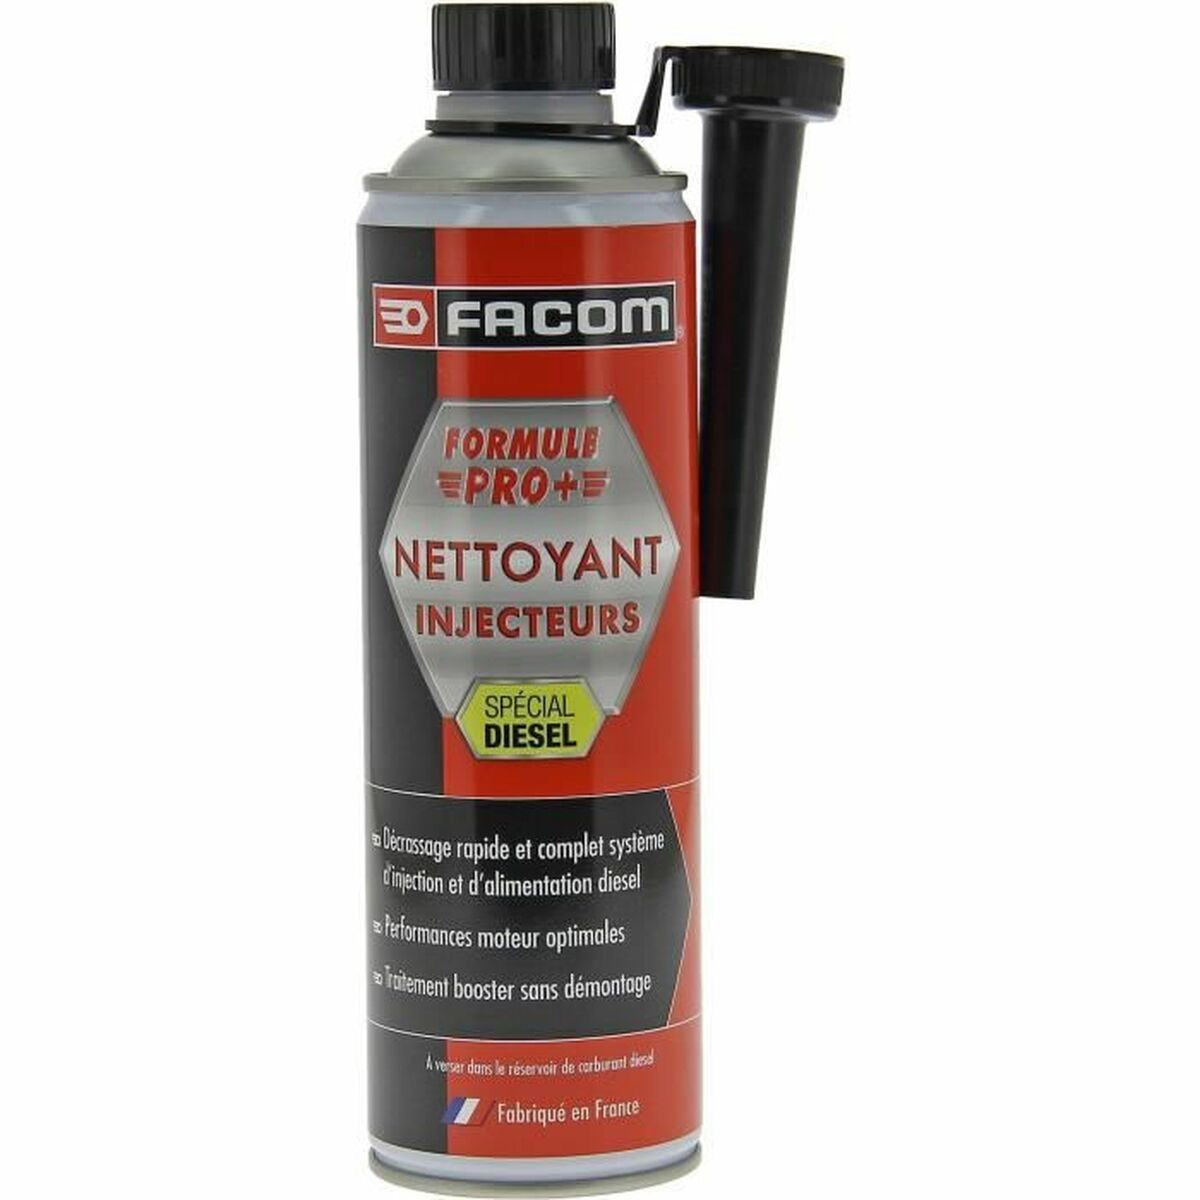 Nettoyant pour injecteurs diesel Facom Pro+ 600 ml